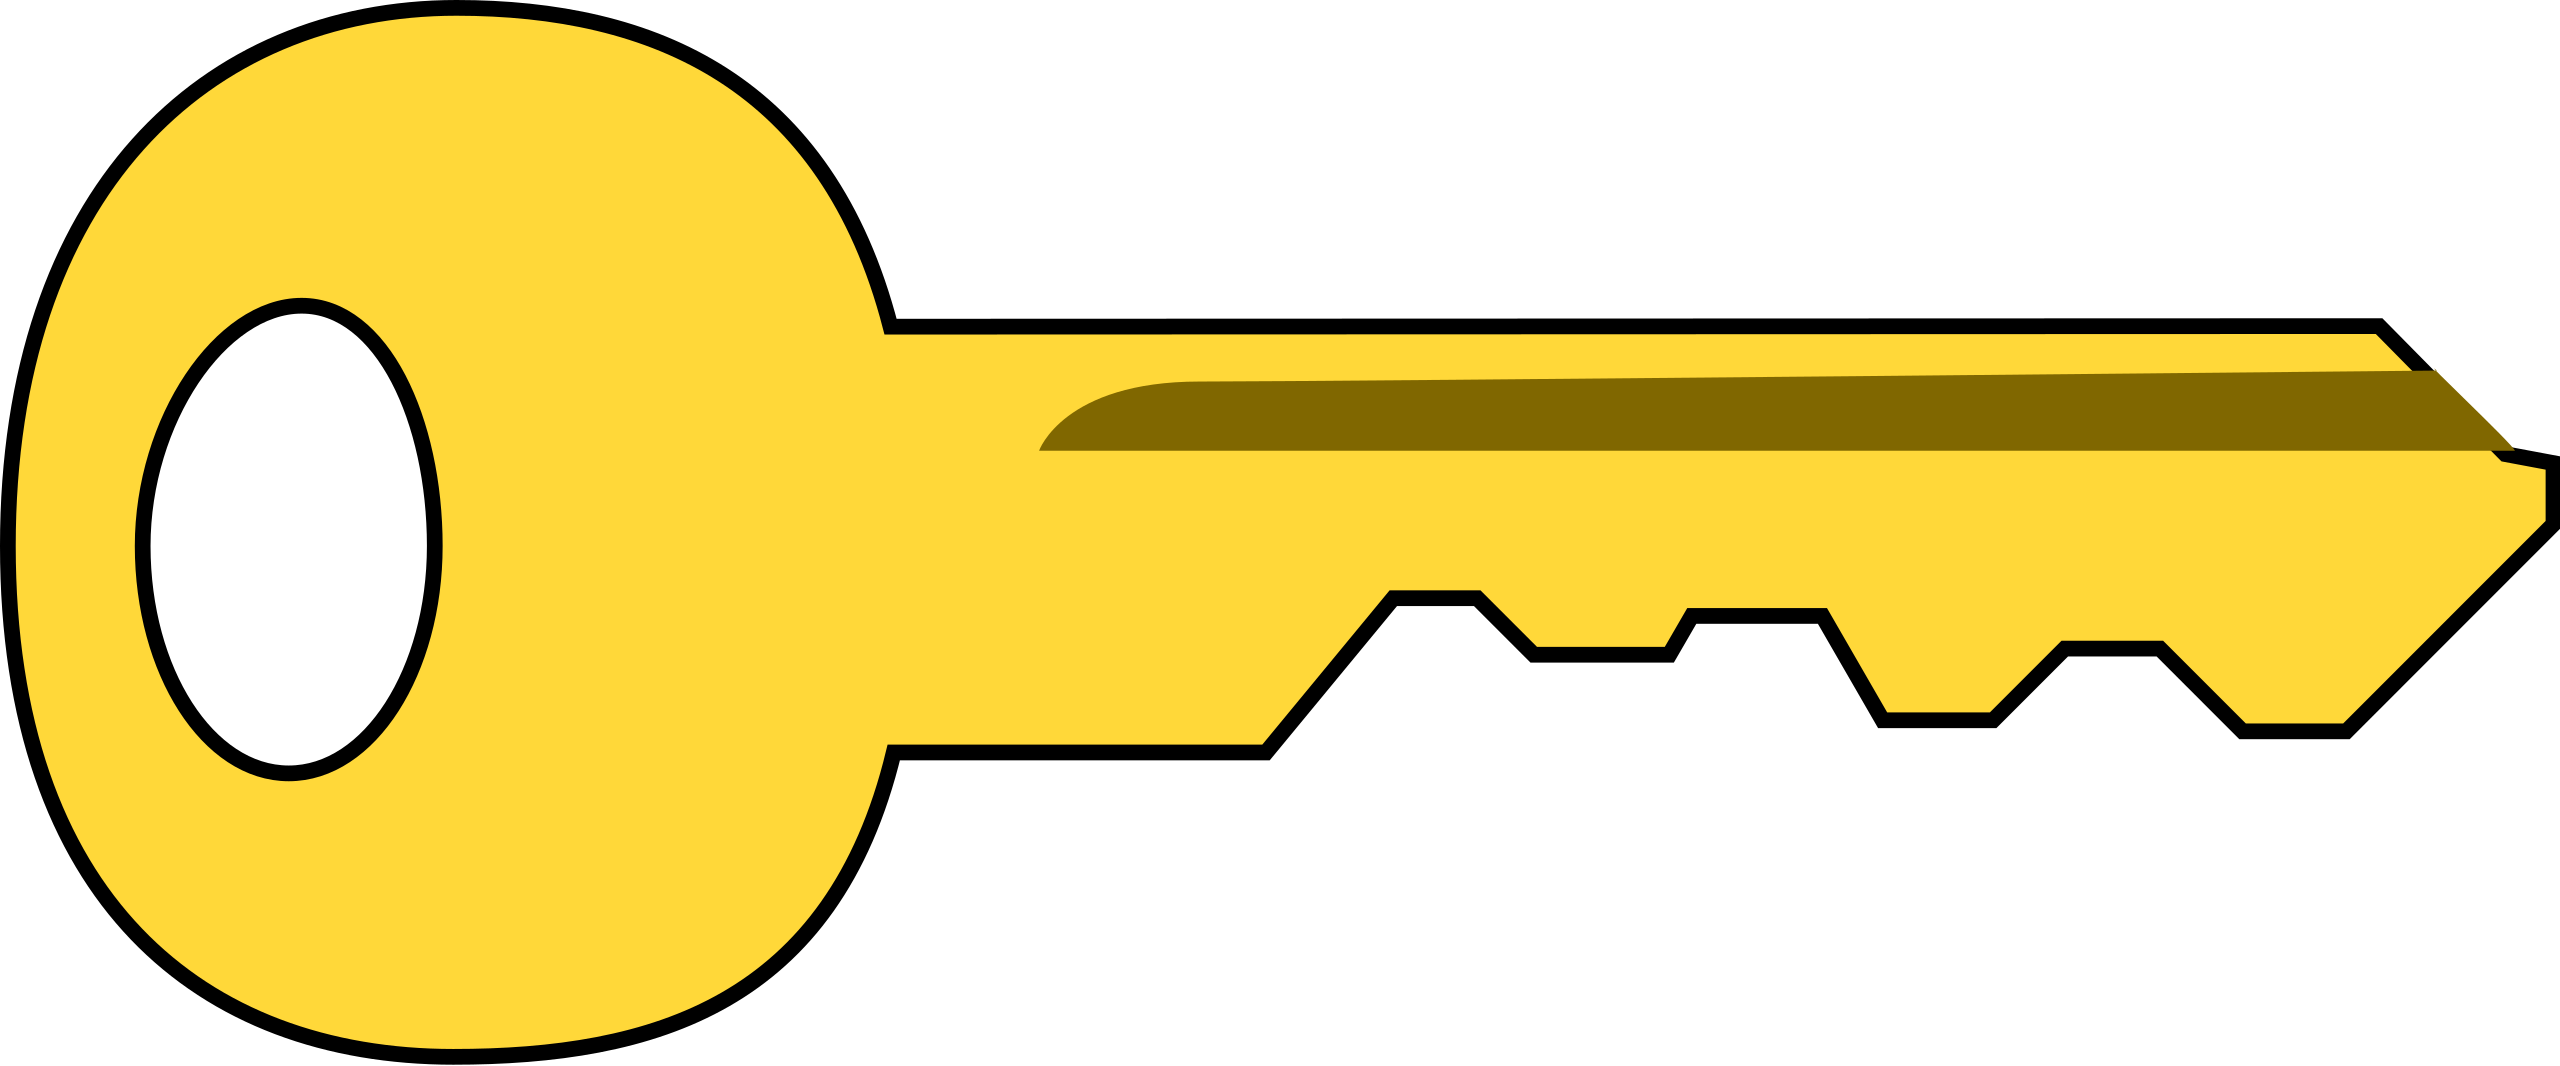 Chìa khóa